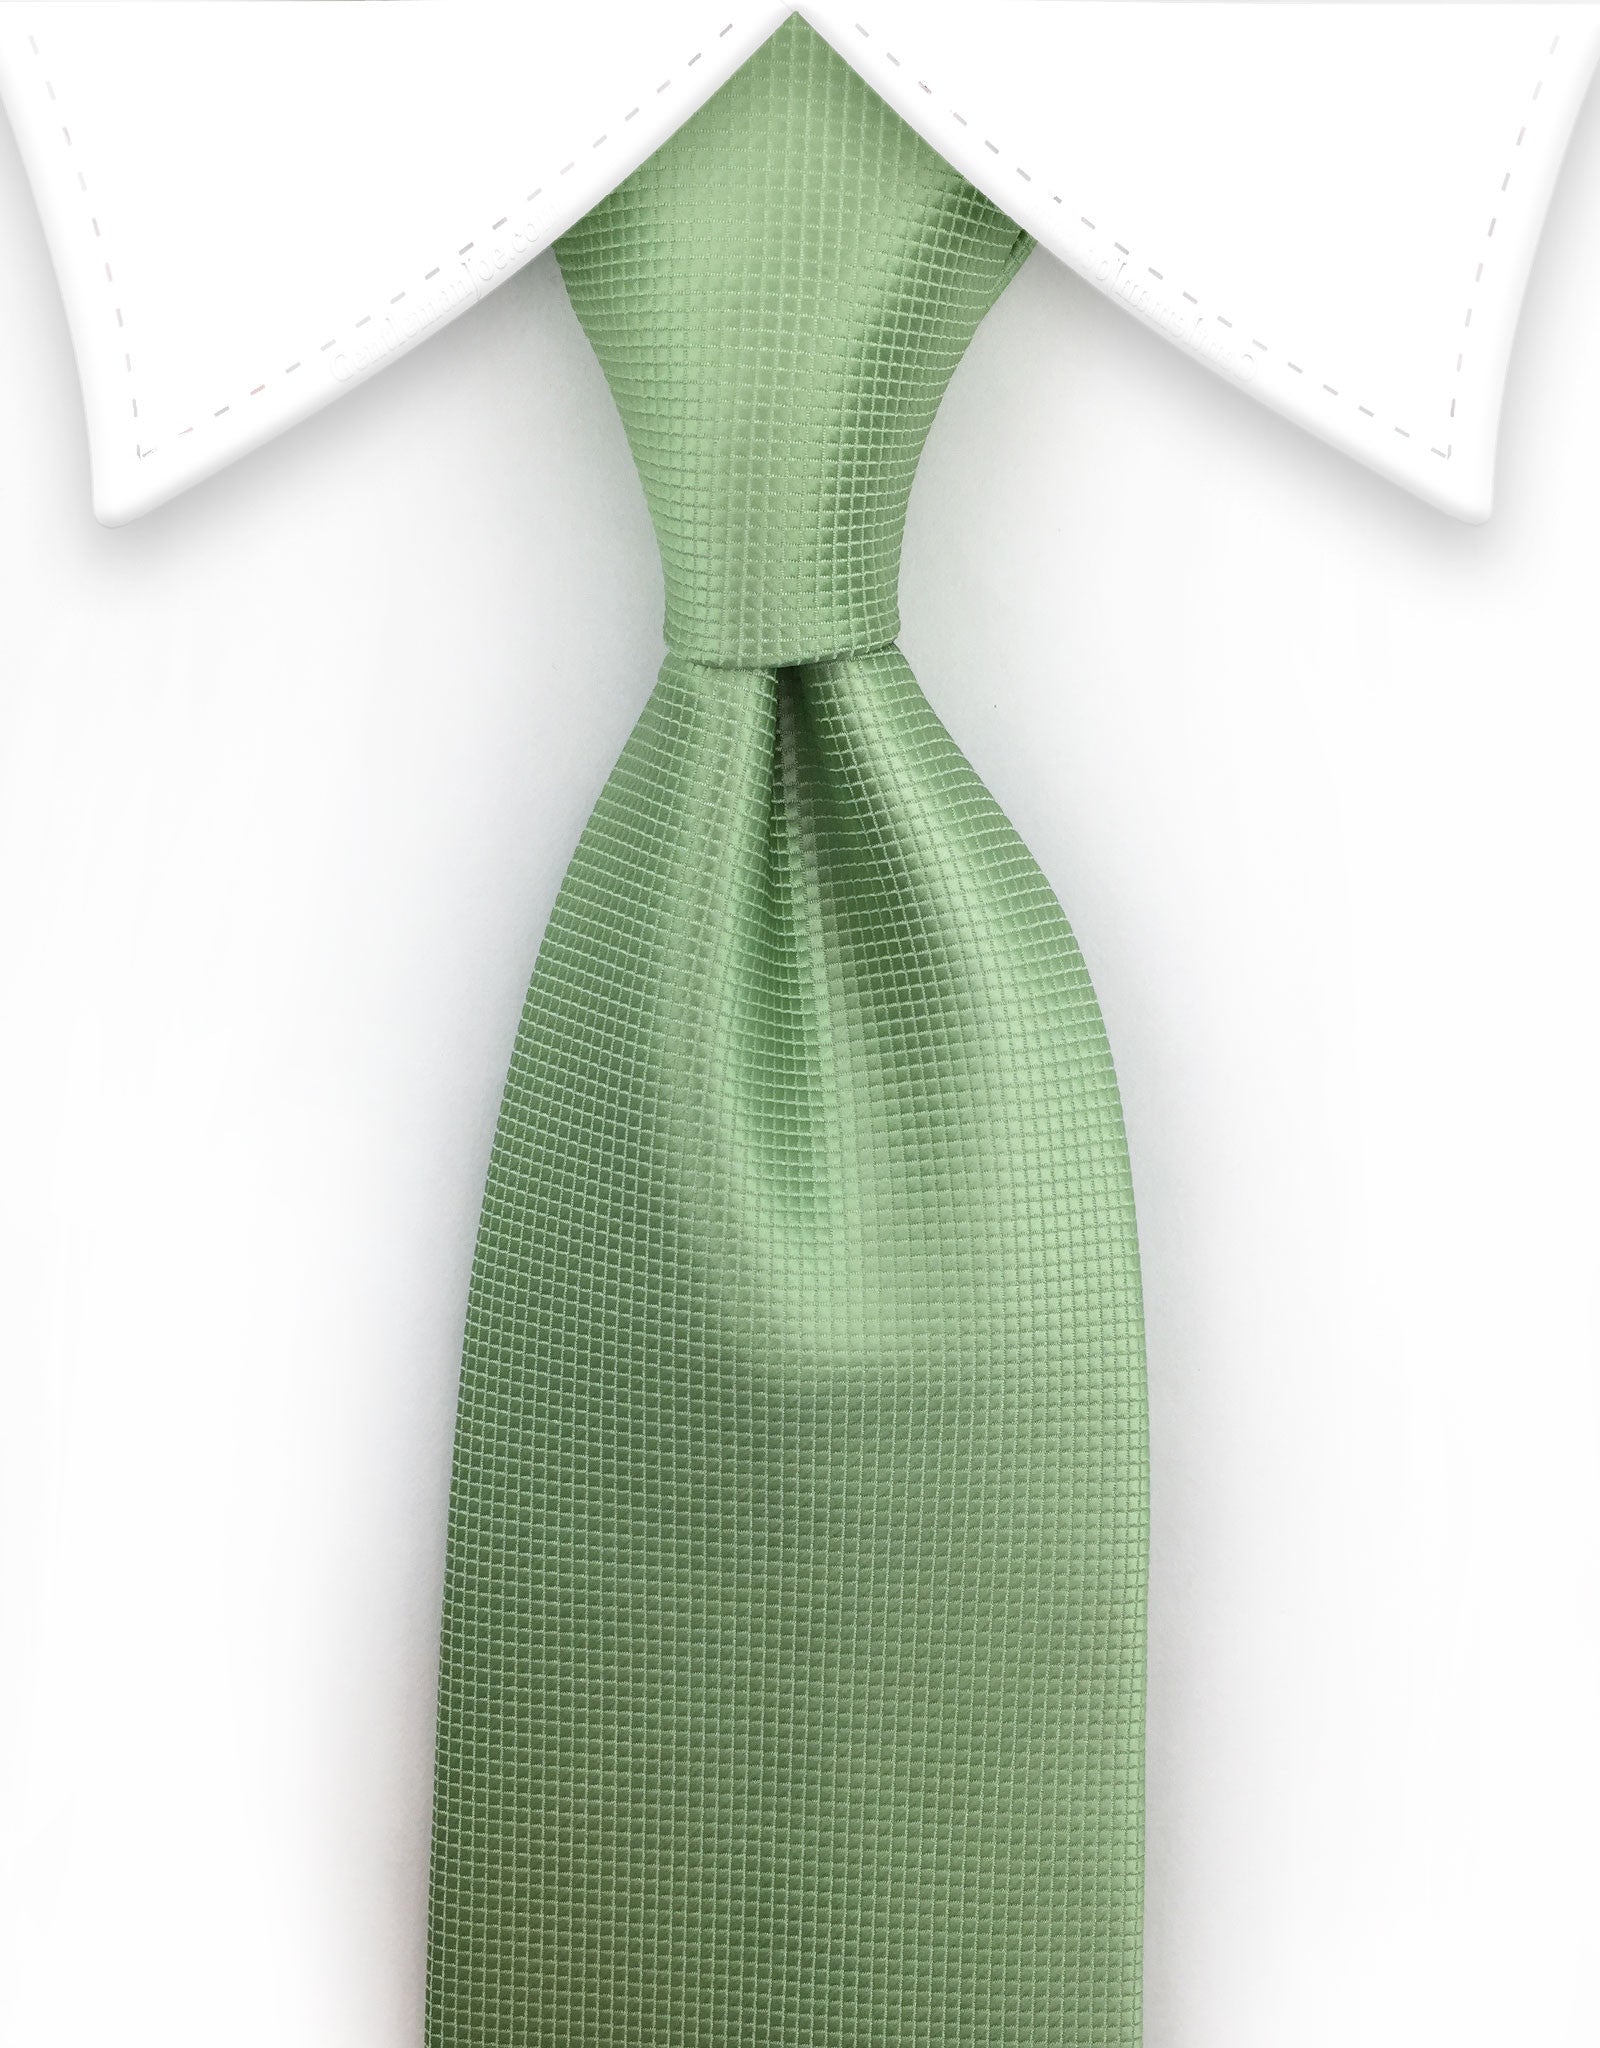 Pastel green necktie